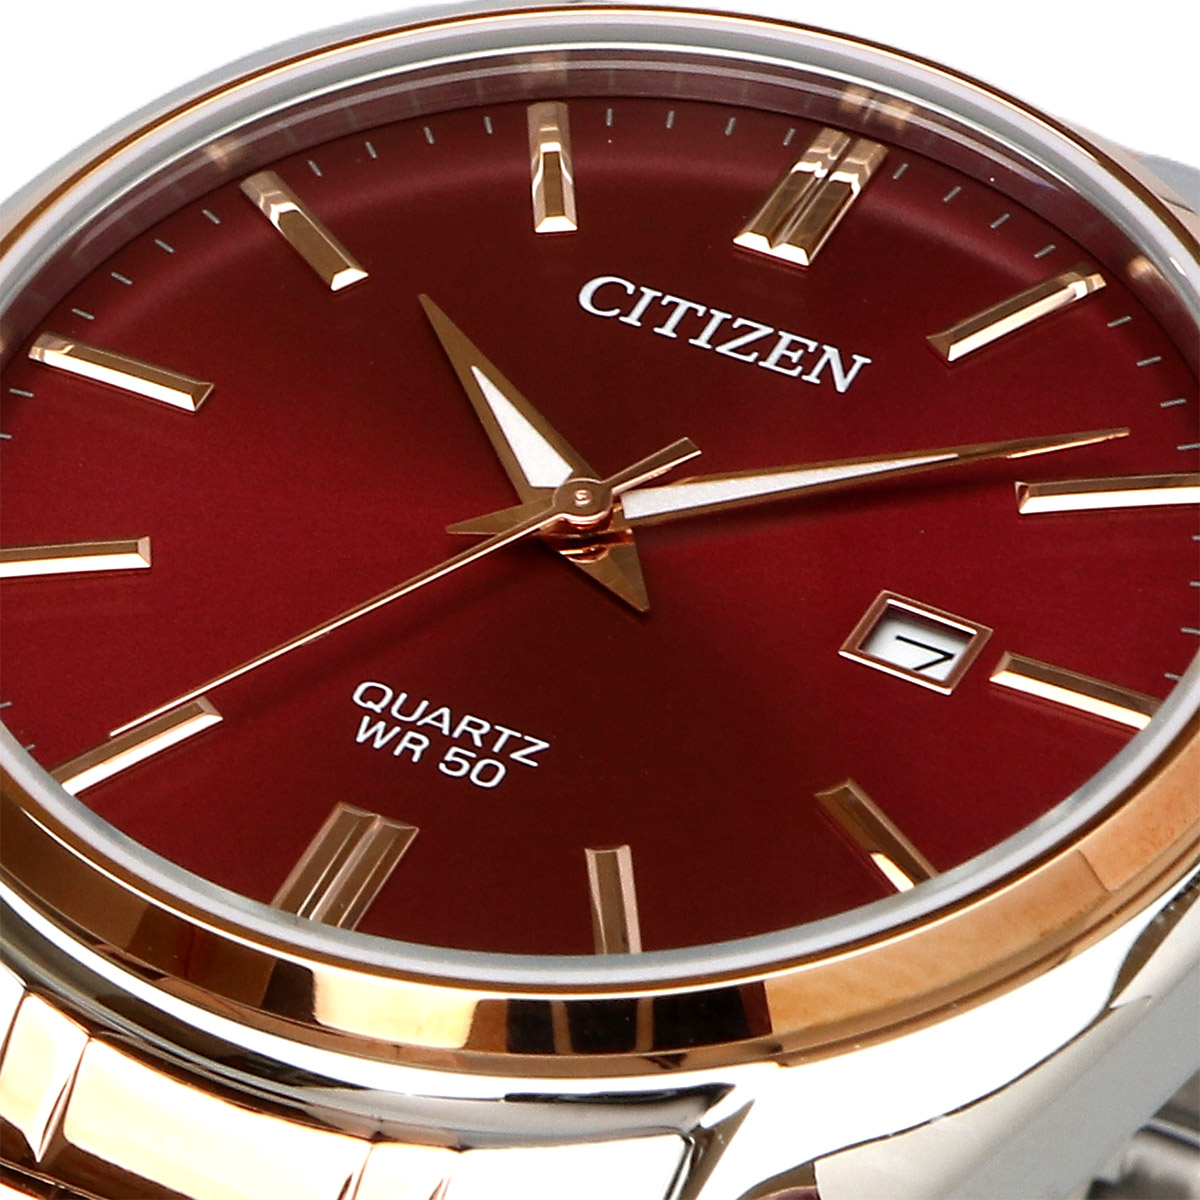 CITIZEN シチズン 腕時計 メンズ 海外モデル クォーツ ビジネス 